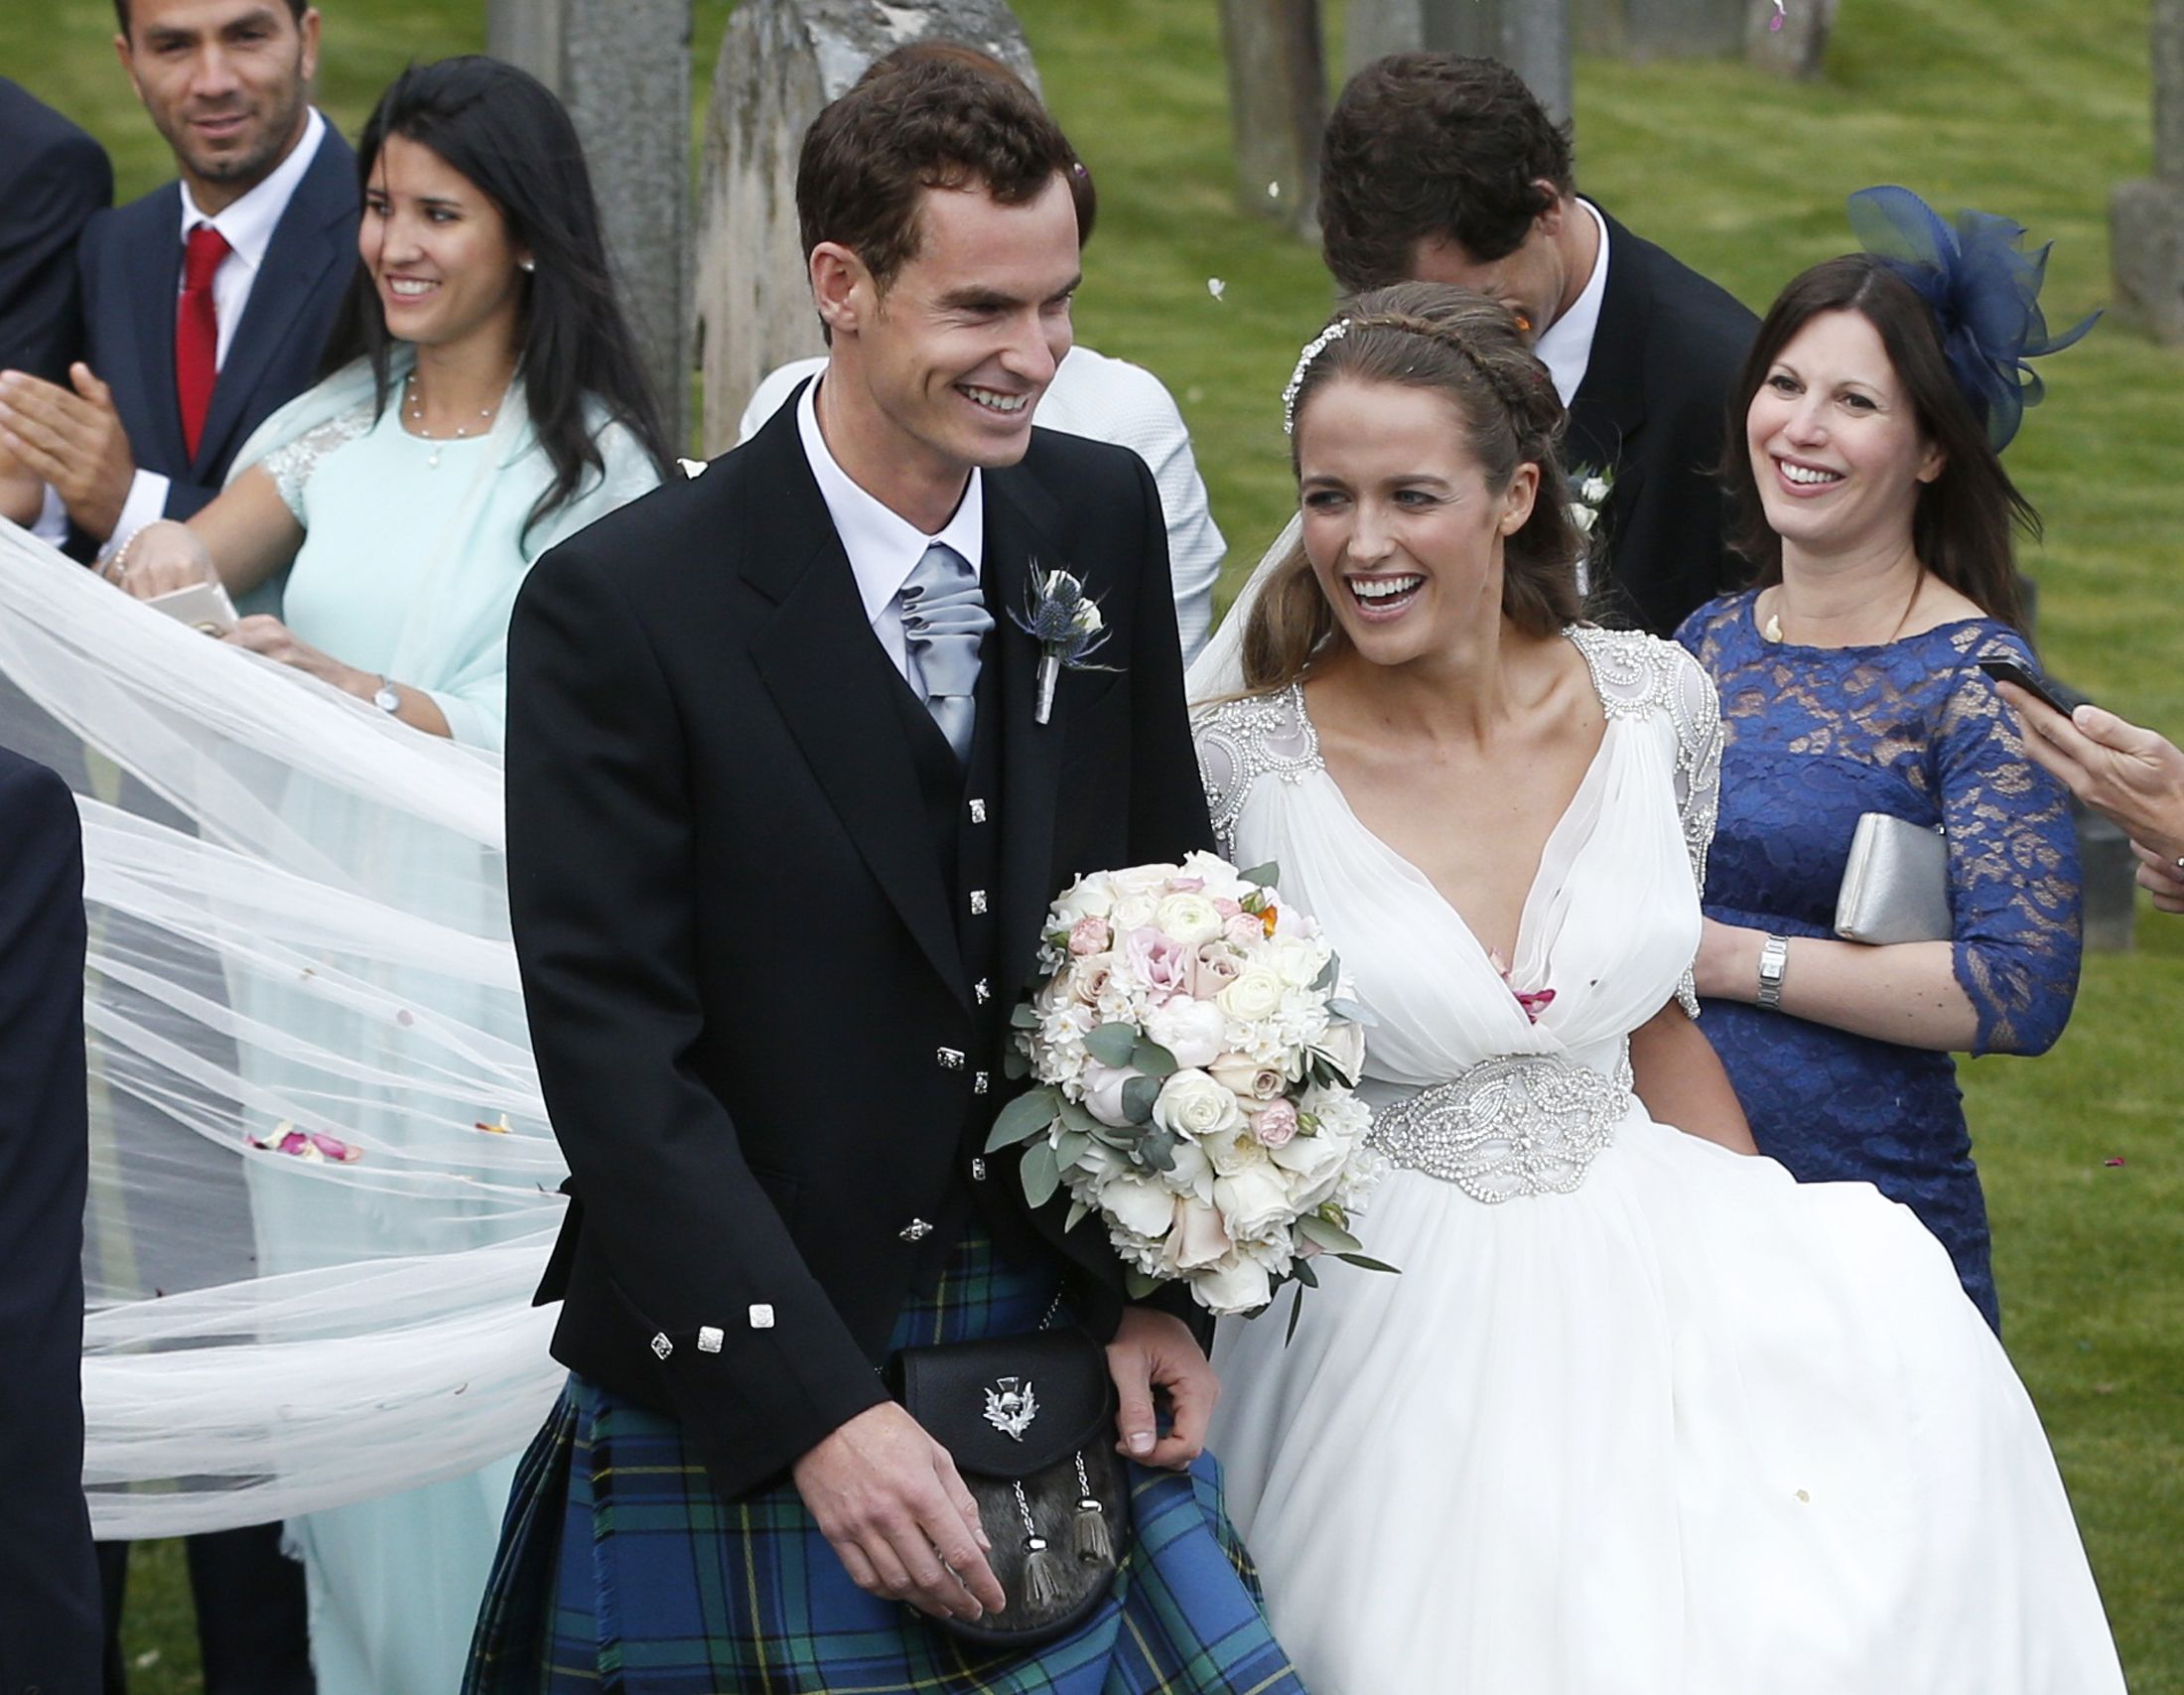 Andy Murray and Kim Sears Wedding